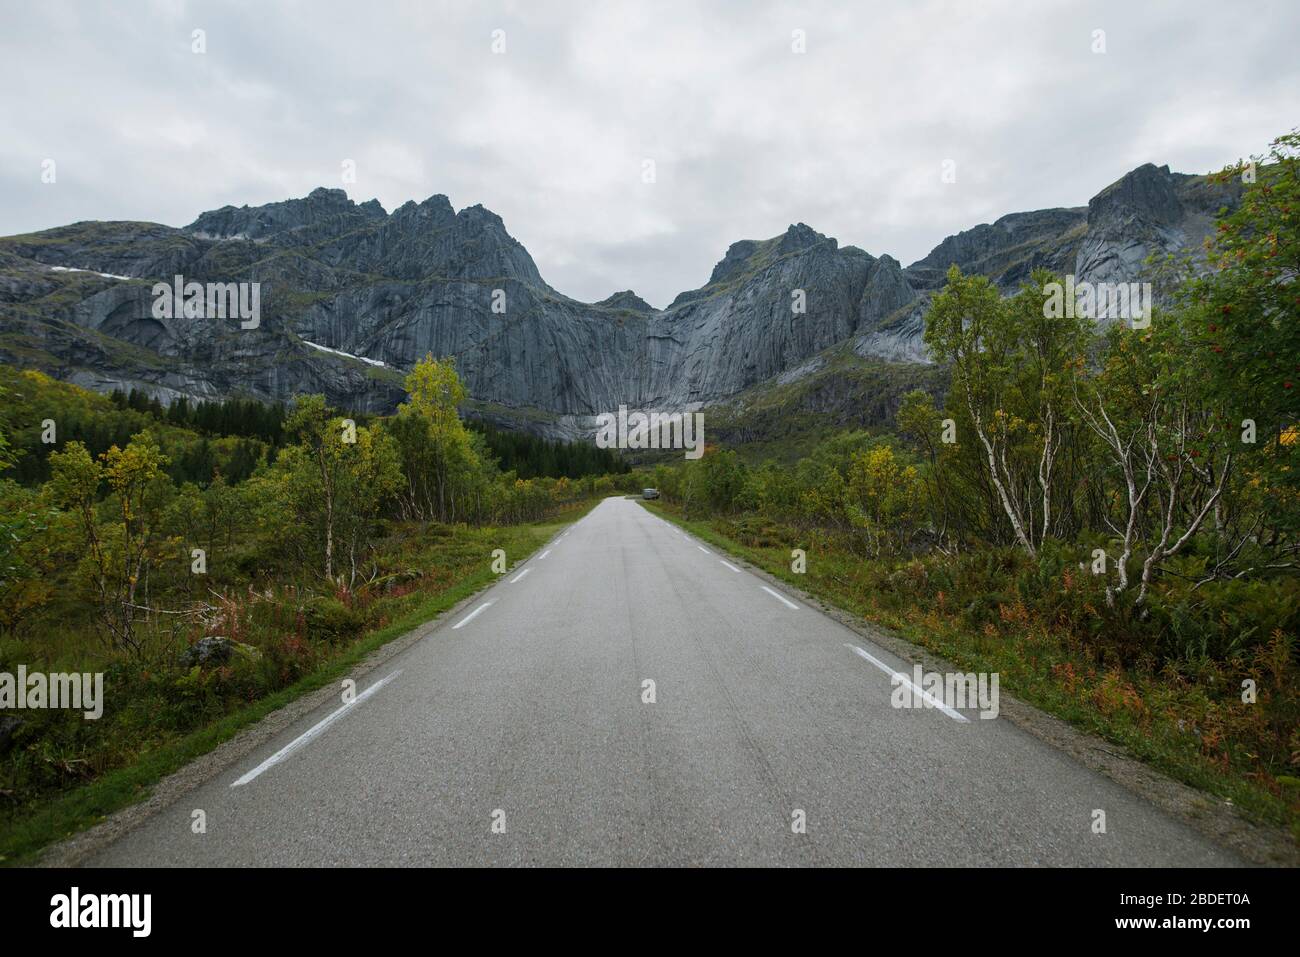 Norway, Lofoten Islands, Empty road in mountain landscape Stock Photo